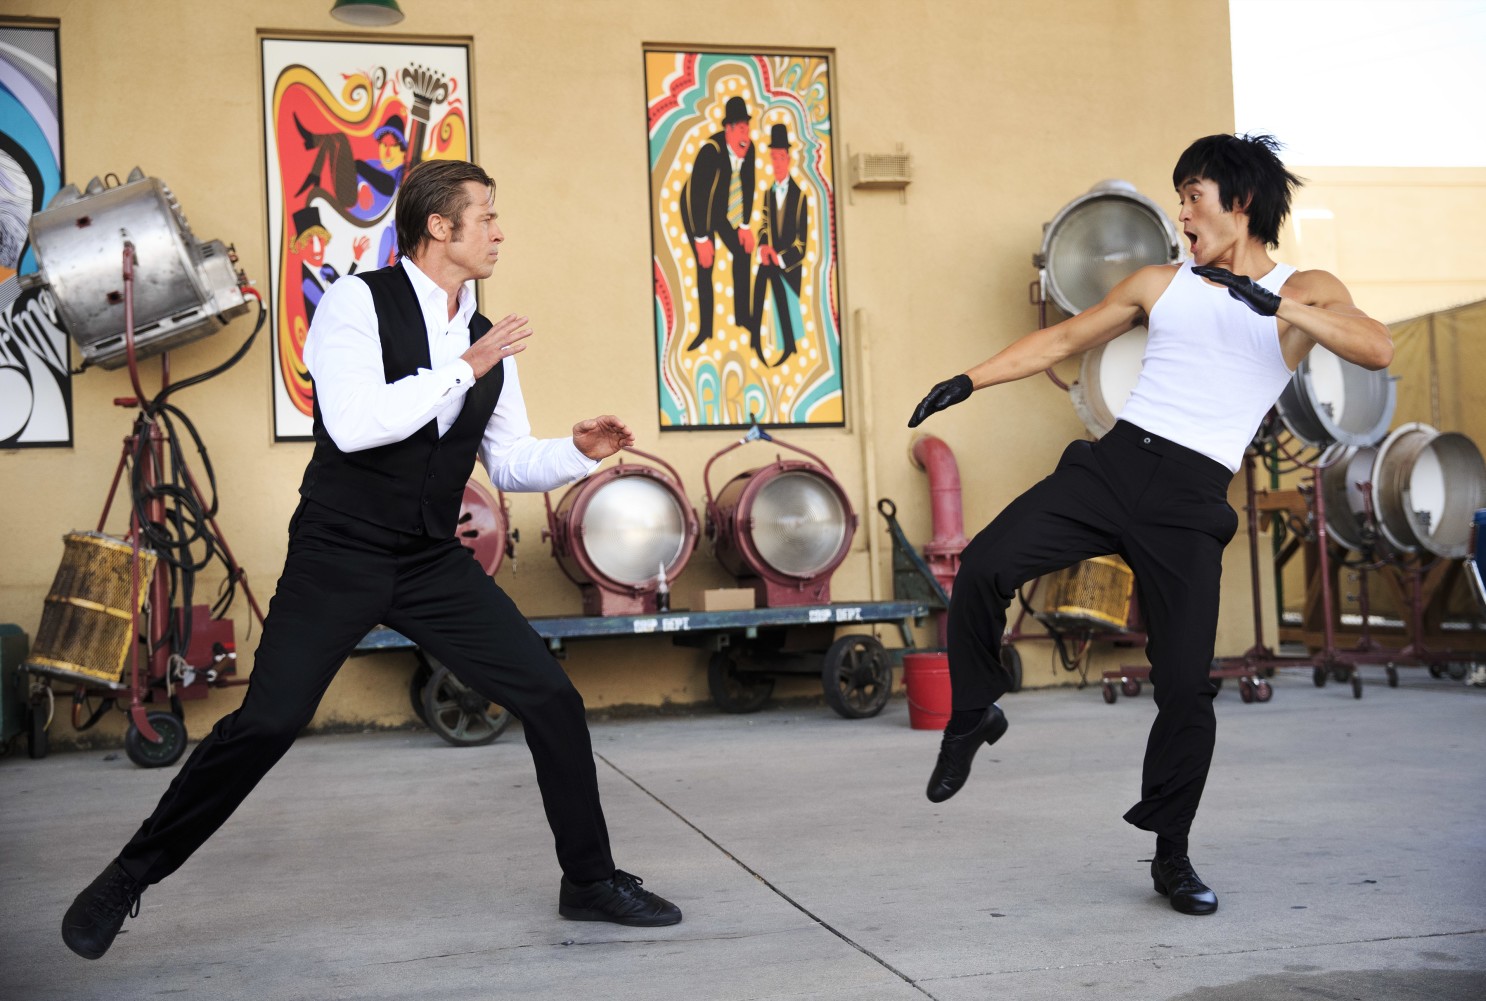 Quentin Tarantino se envolve em nova polêmica por conta de Bruce Lee